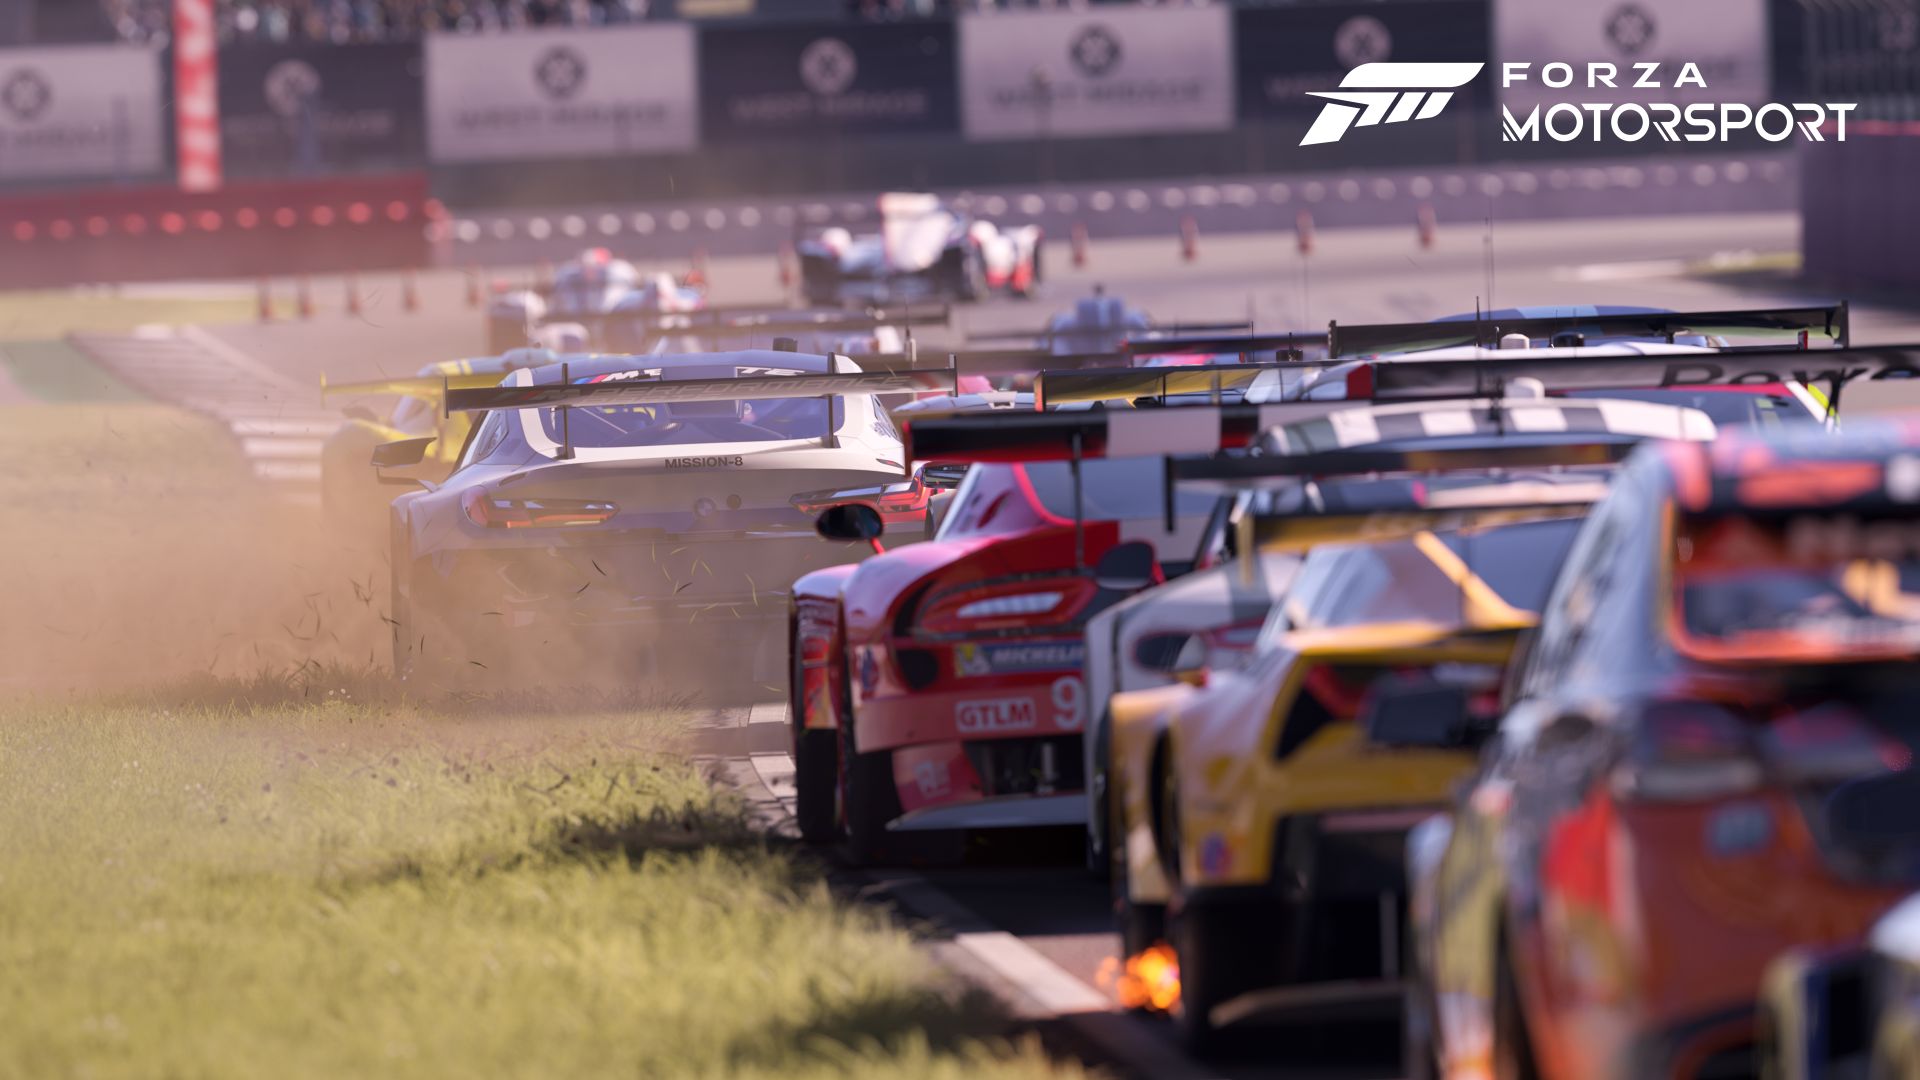 Forza Motorsport』: クルマ好きのための究極のレーシングゲームが発売 